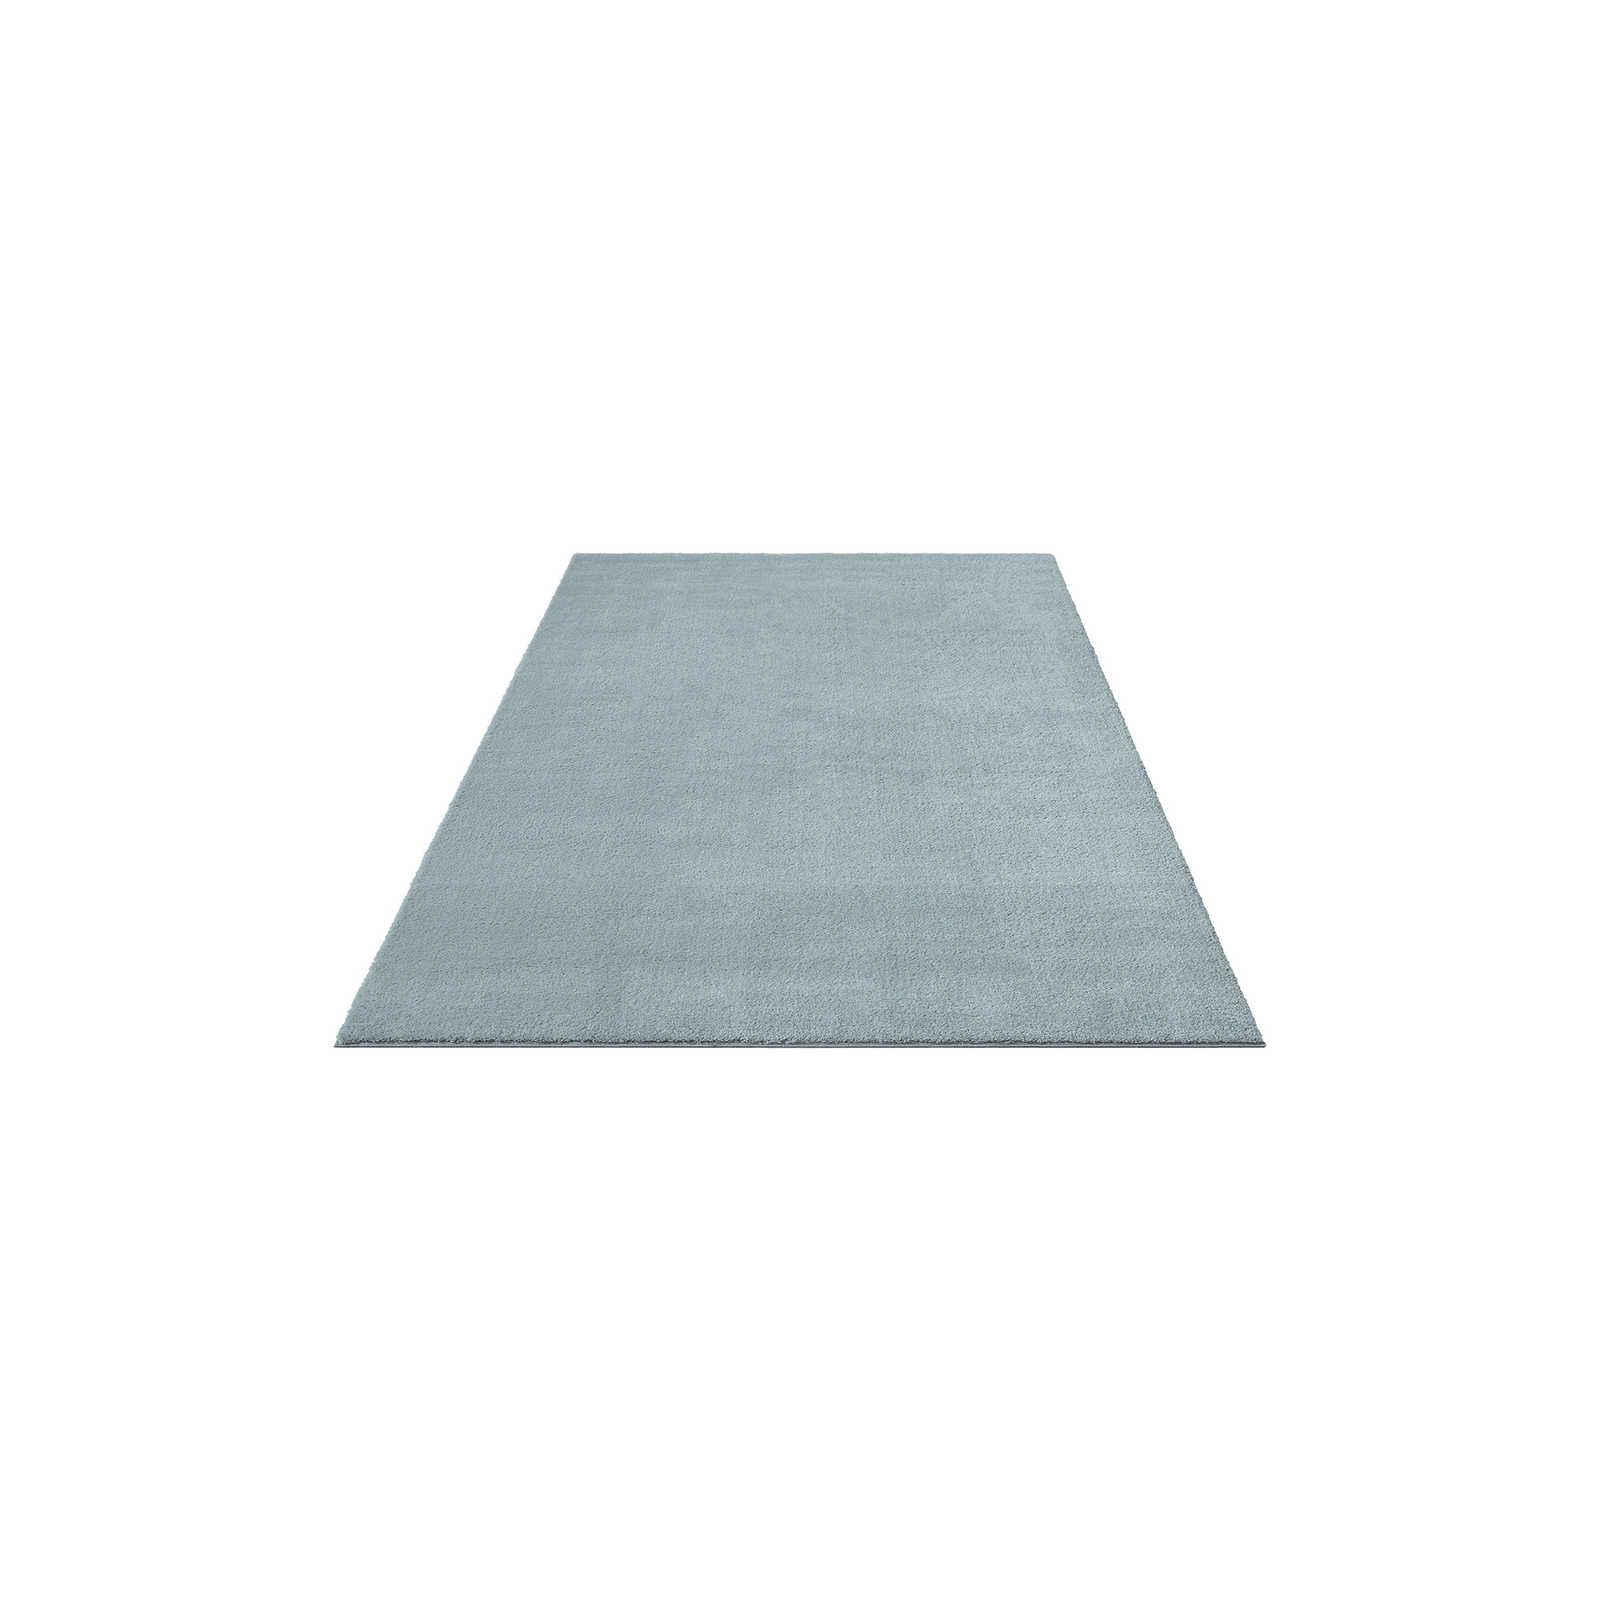 Flauschiger Hochflor Teppich in Blau – 200 x 140 cm
